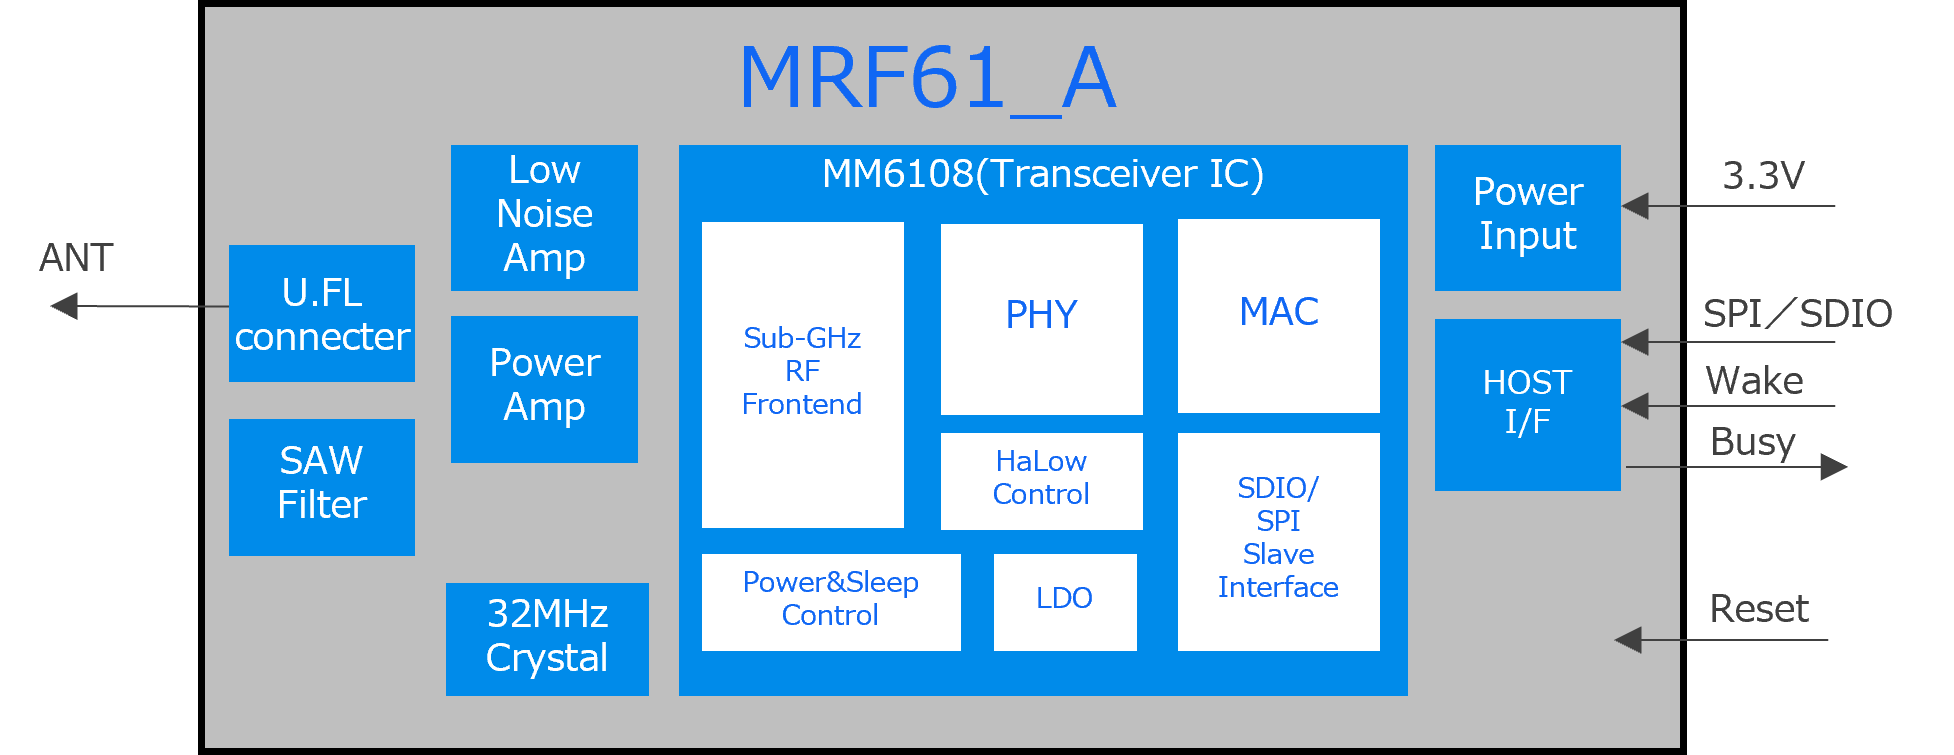 MRF61_A内部構成